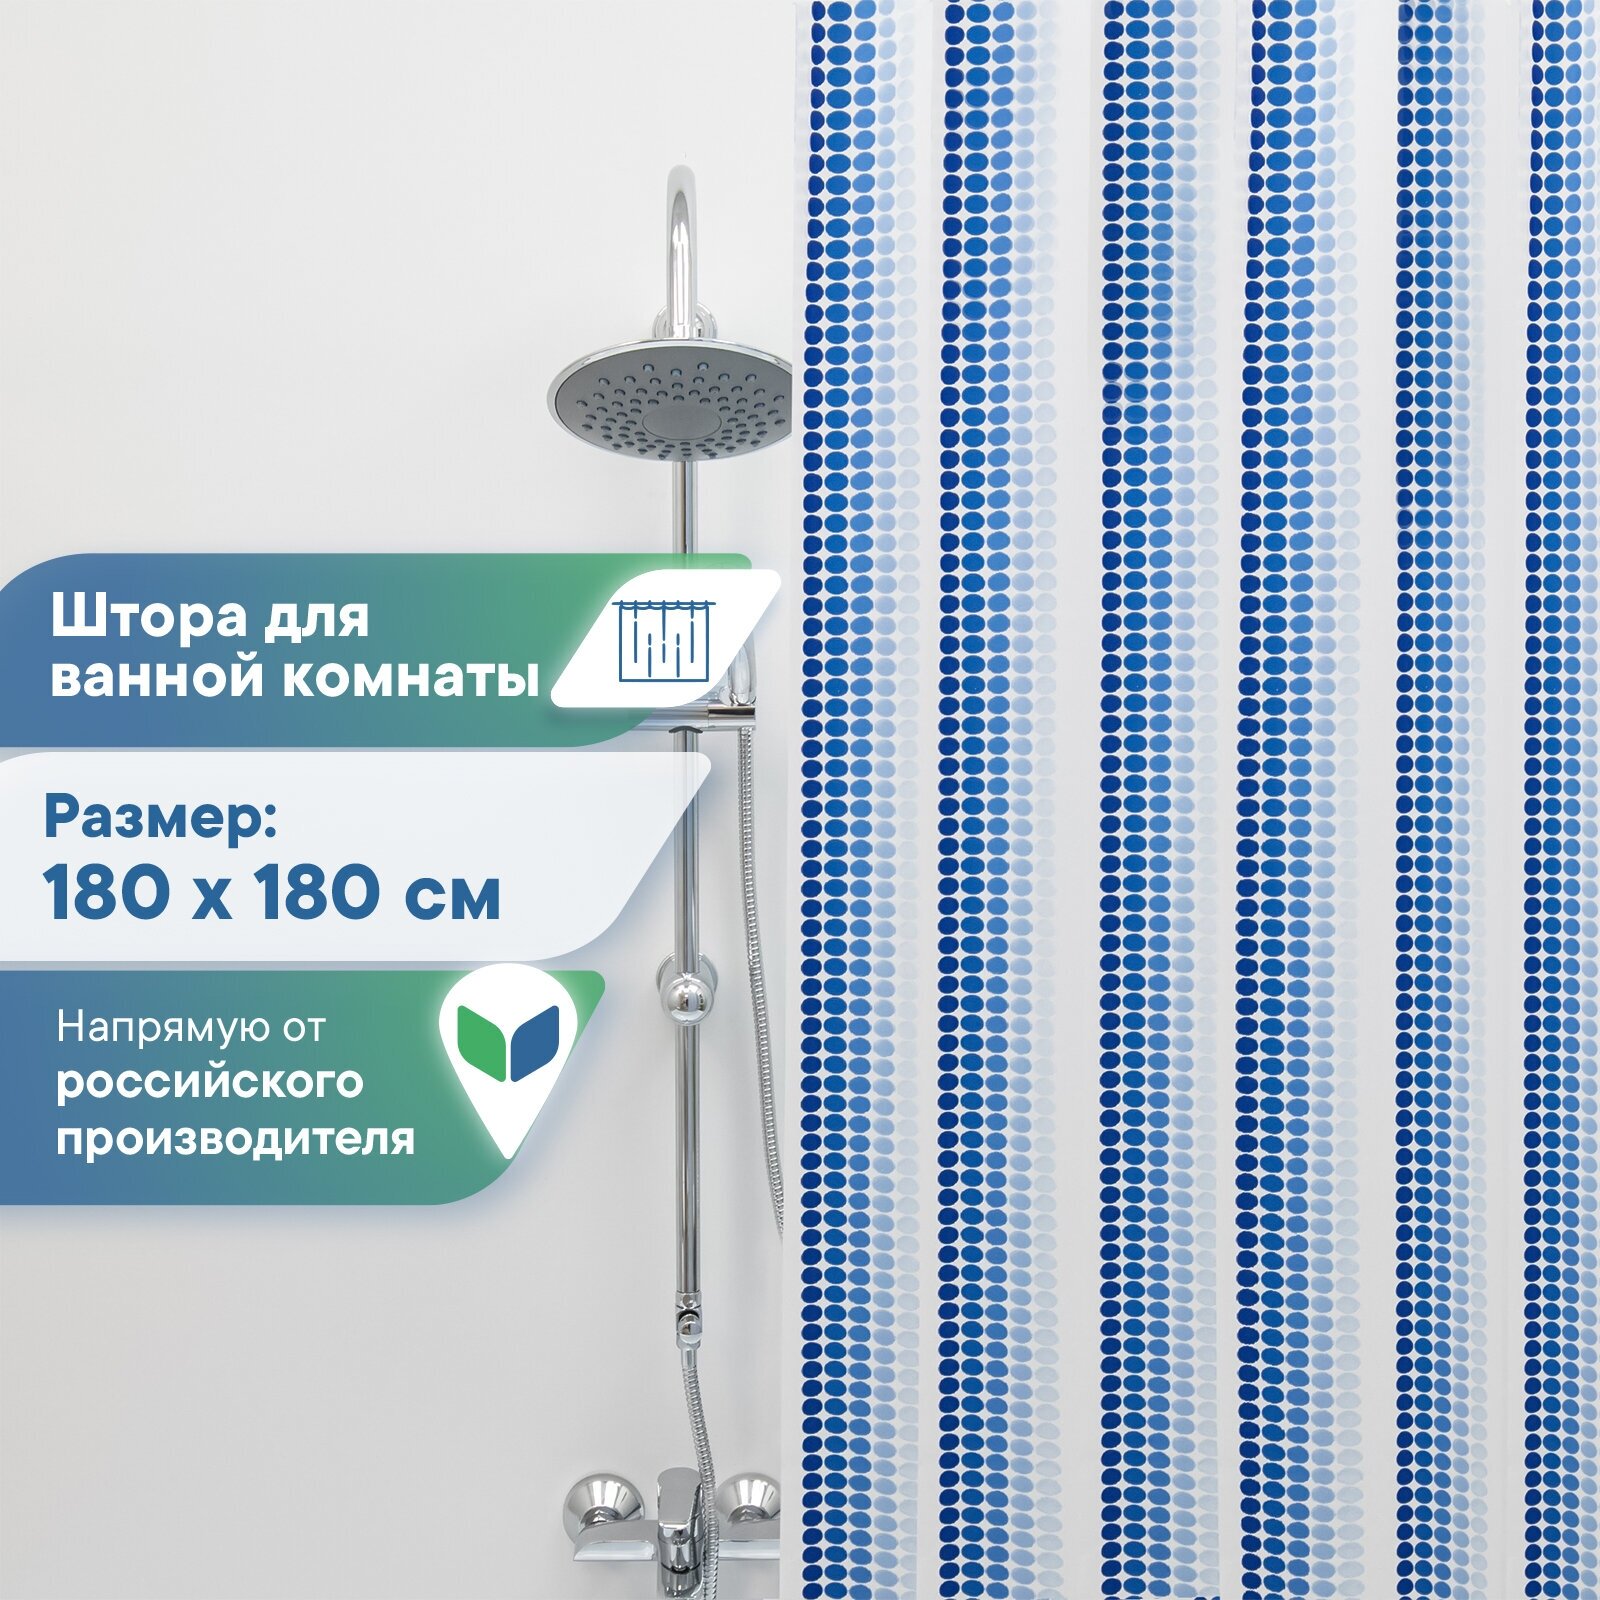 Штора для ванной комнаты VILINA водонепроницаемая с рисунком занавес с кольцами 180х180 см Ритм синяя